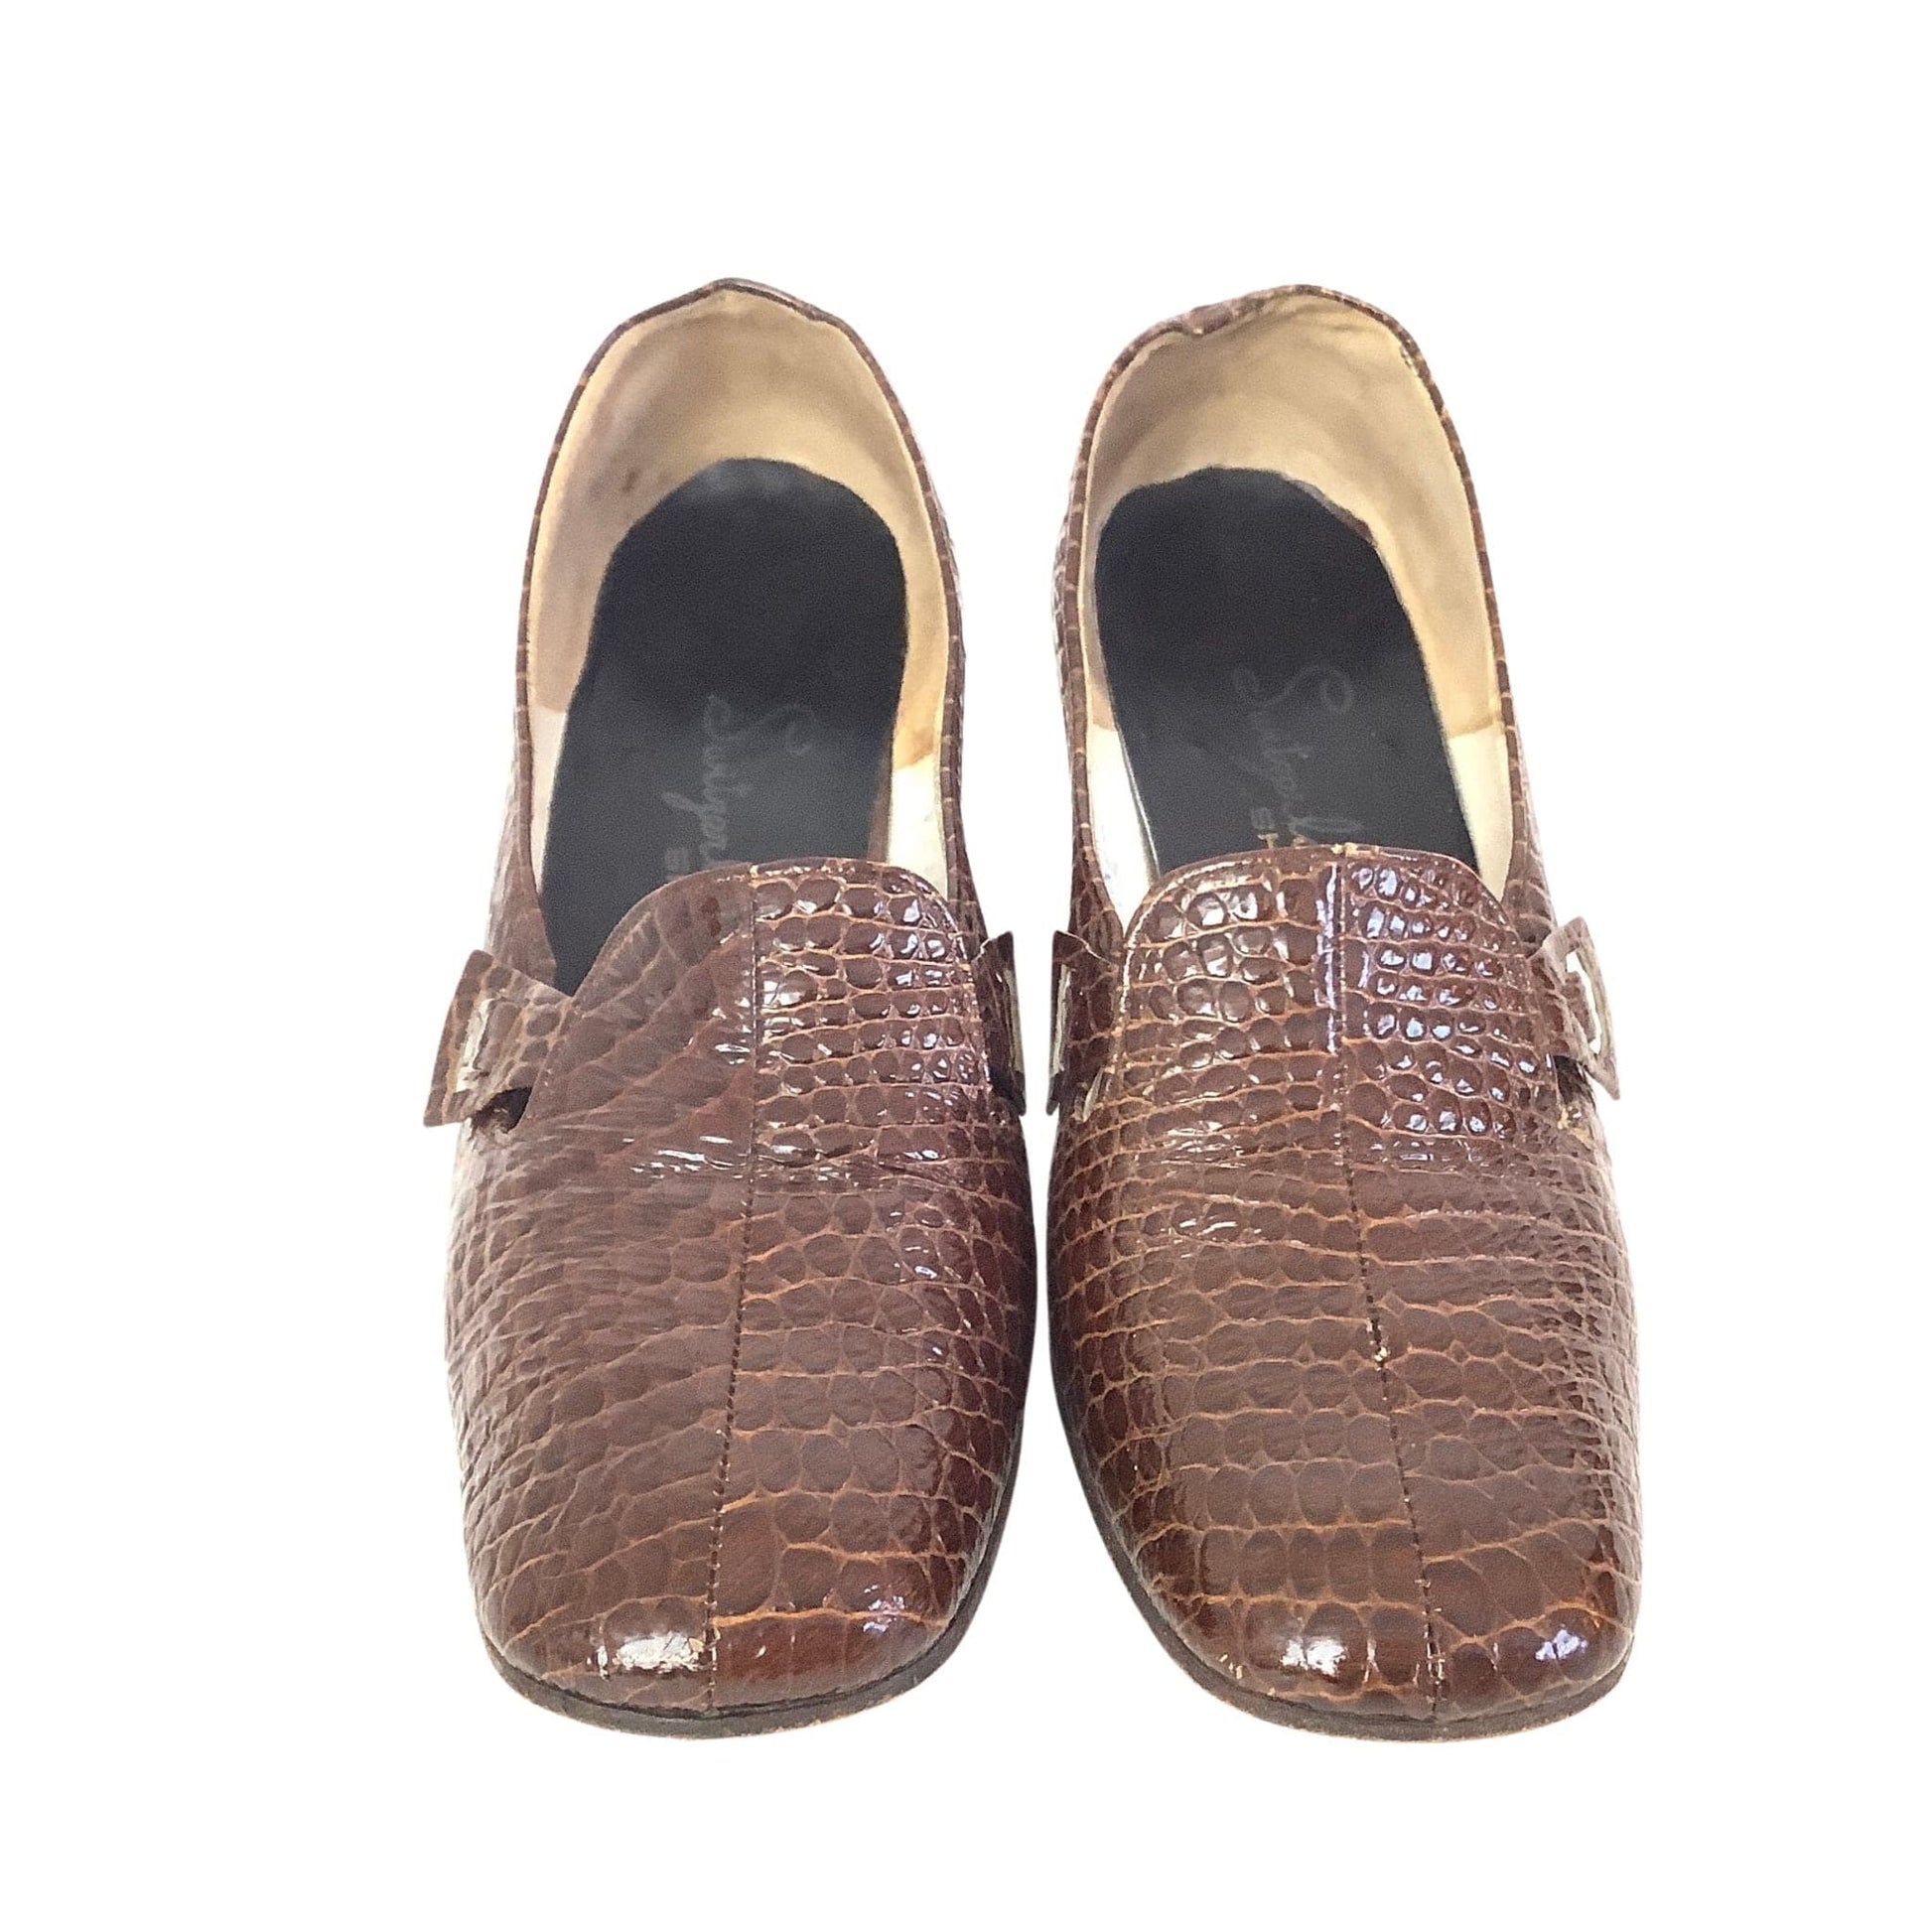 Moc Croc Mod Shoes 6 / Brown / Vintage 1960s